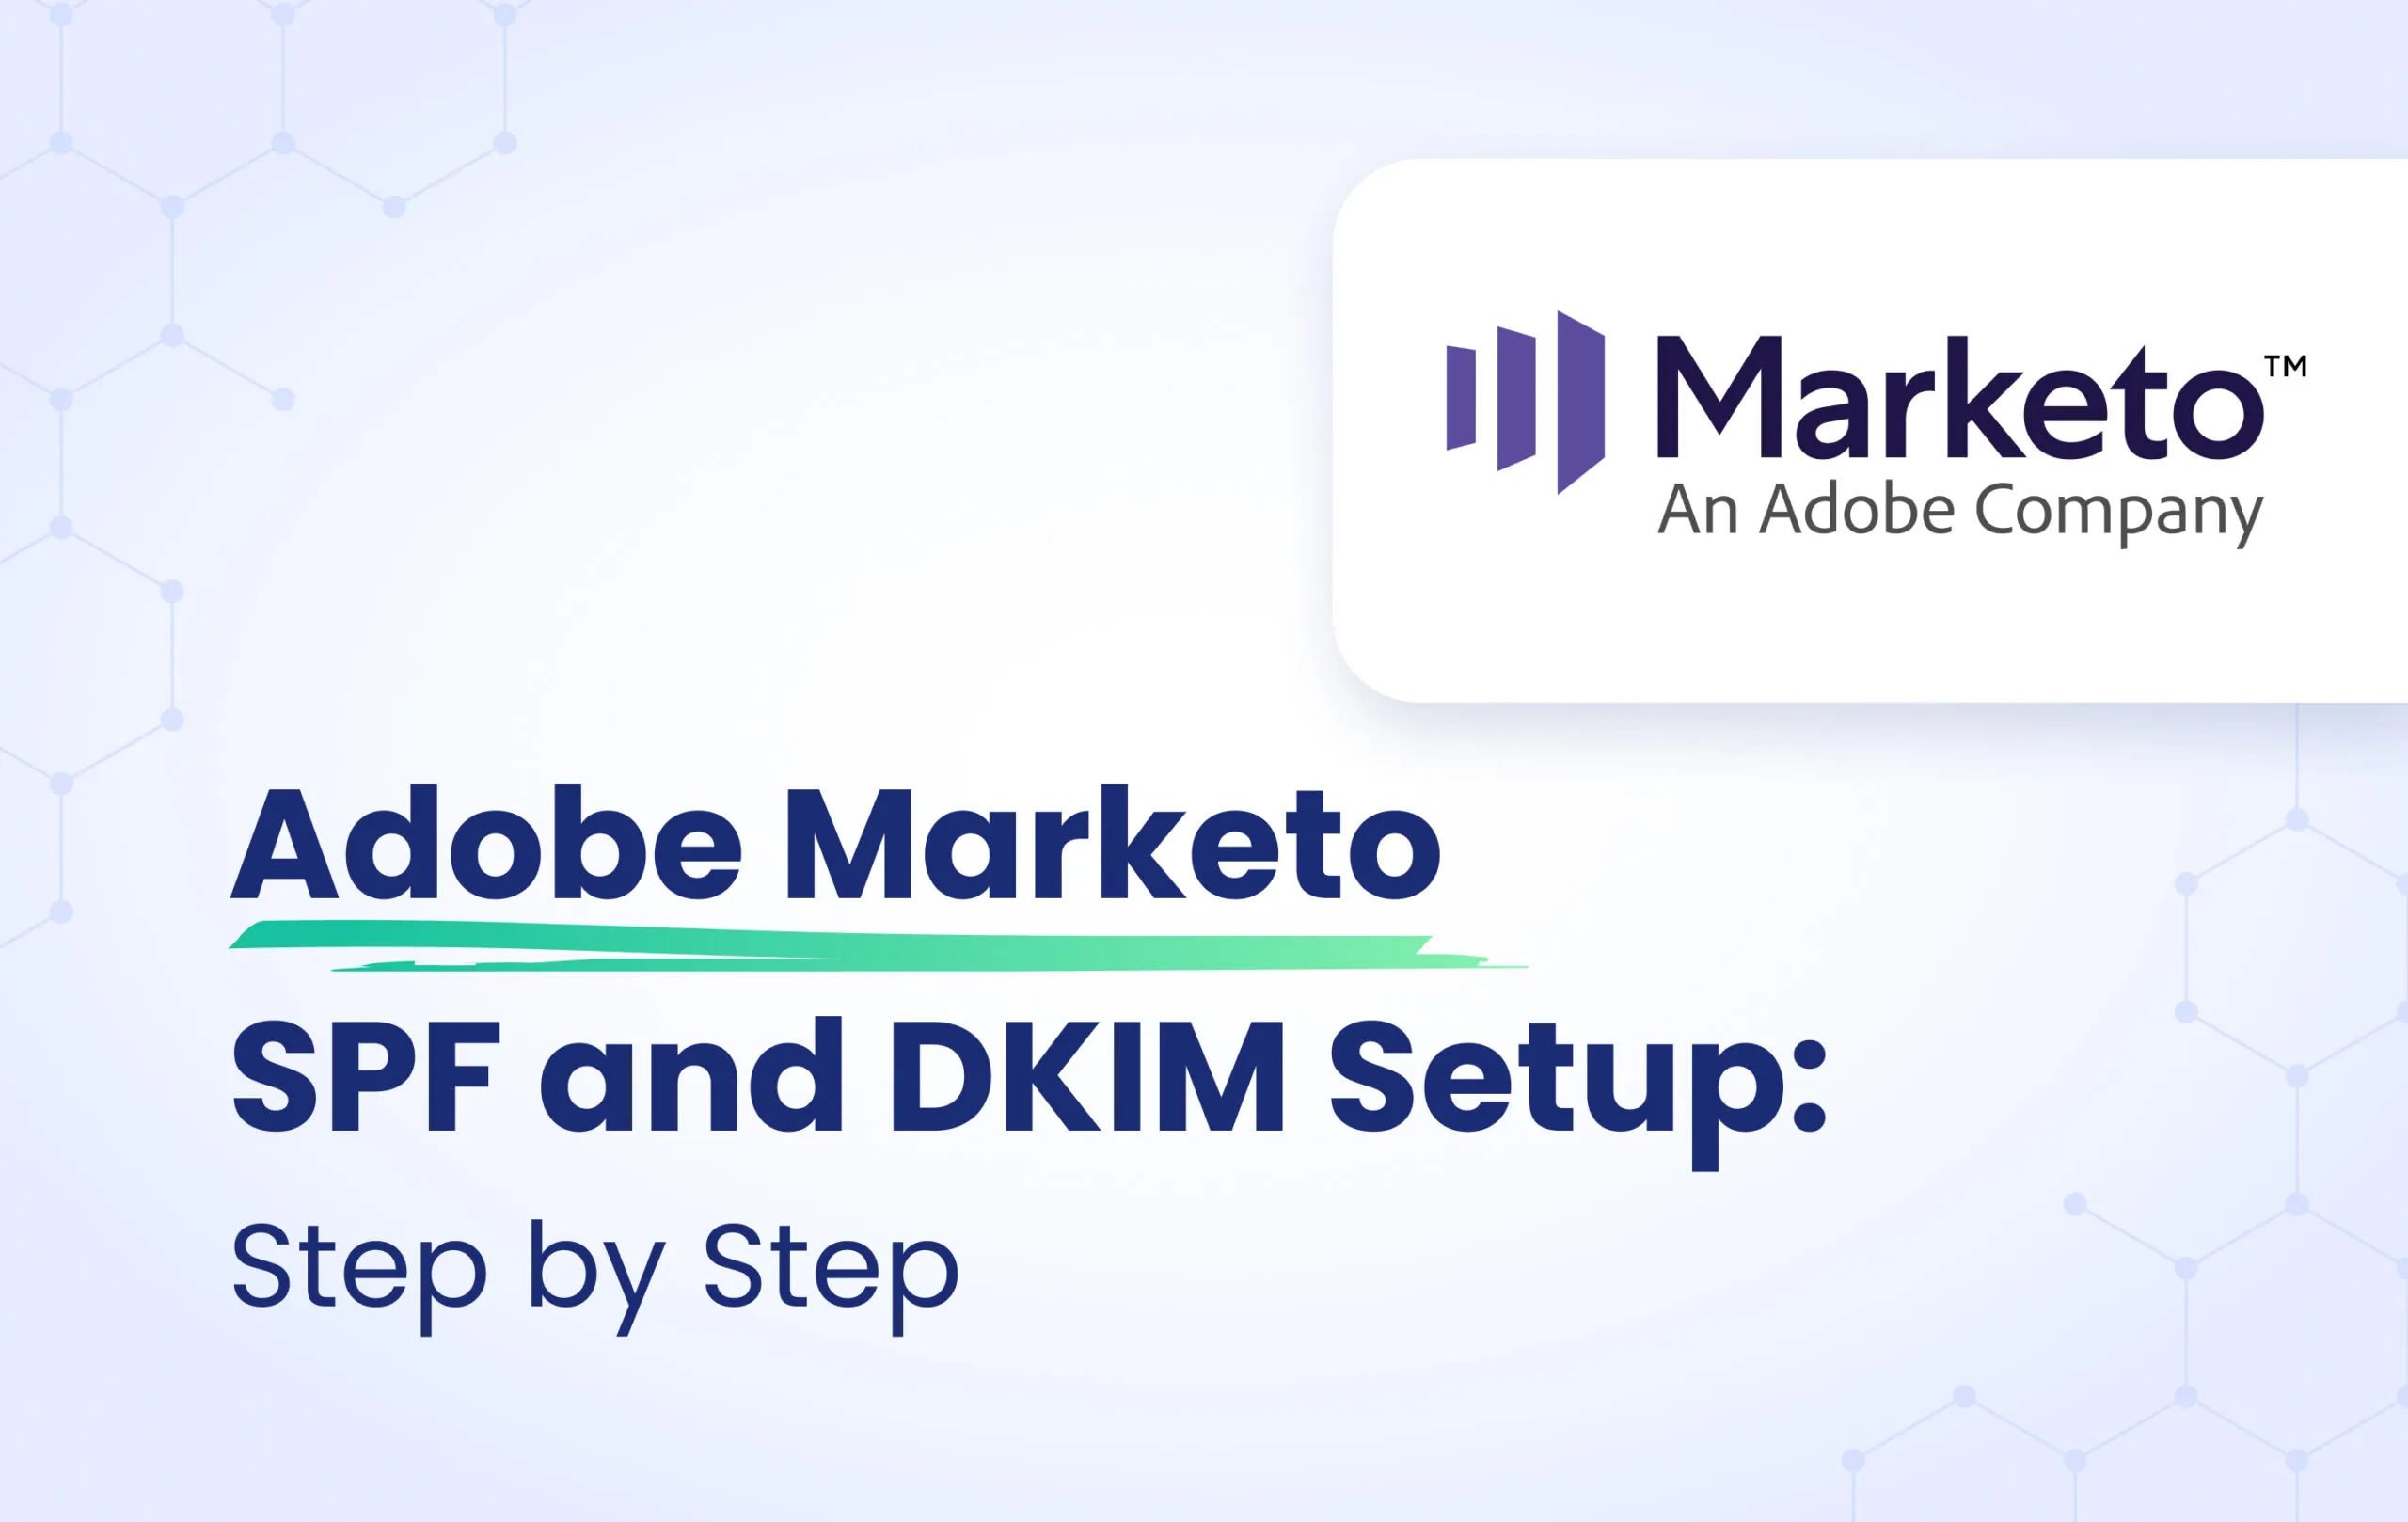 Configuration of SPF and DKIM for Adobe Marketo